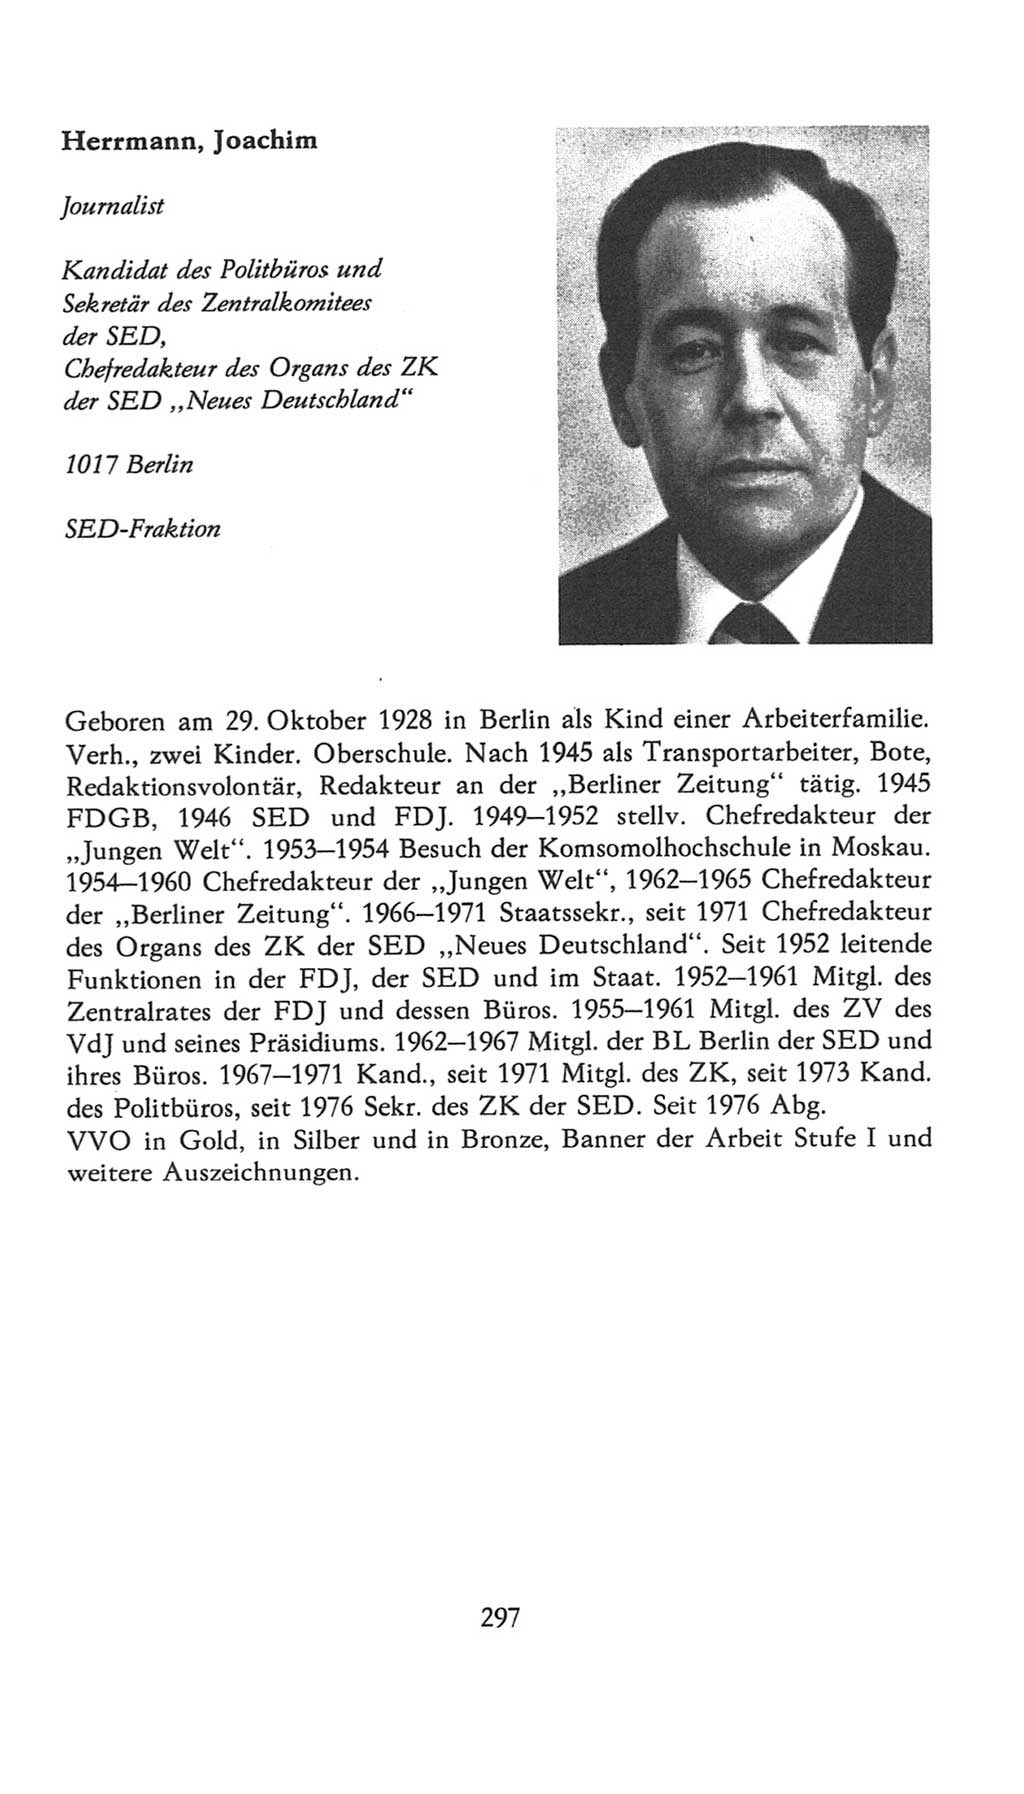 Volkskammer (VK) der Deutschen Demokratischen Republik (DDR), 7. Wahlperiode 1976-1981, Seite 297 (VK. DDR 7. WP. 1976-1981, S. 297)